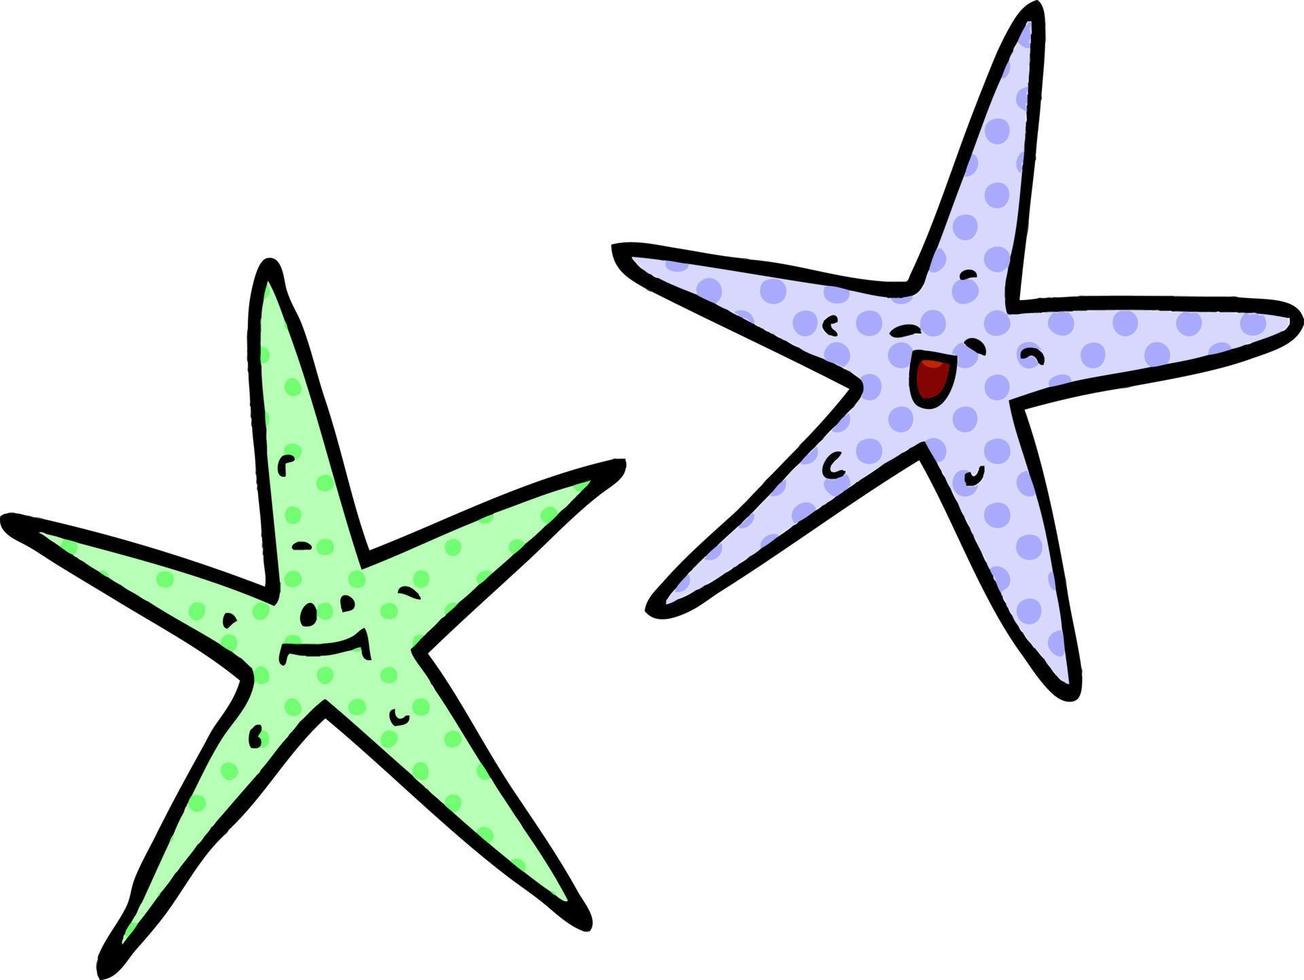 peixe estrela de desenho animado vetor